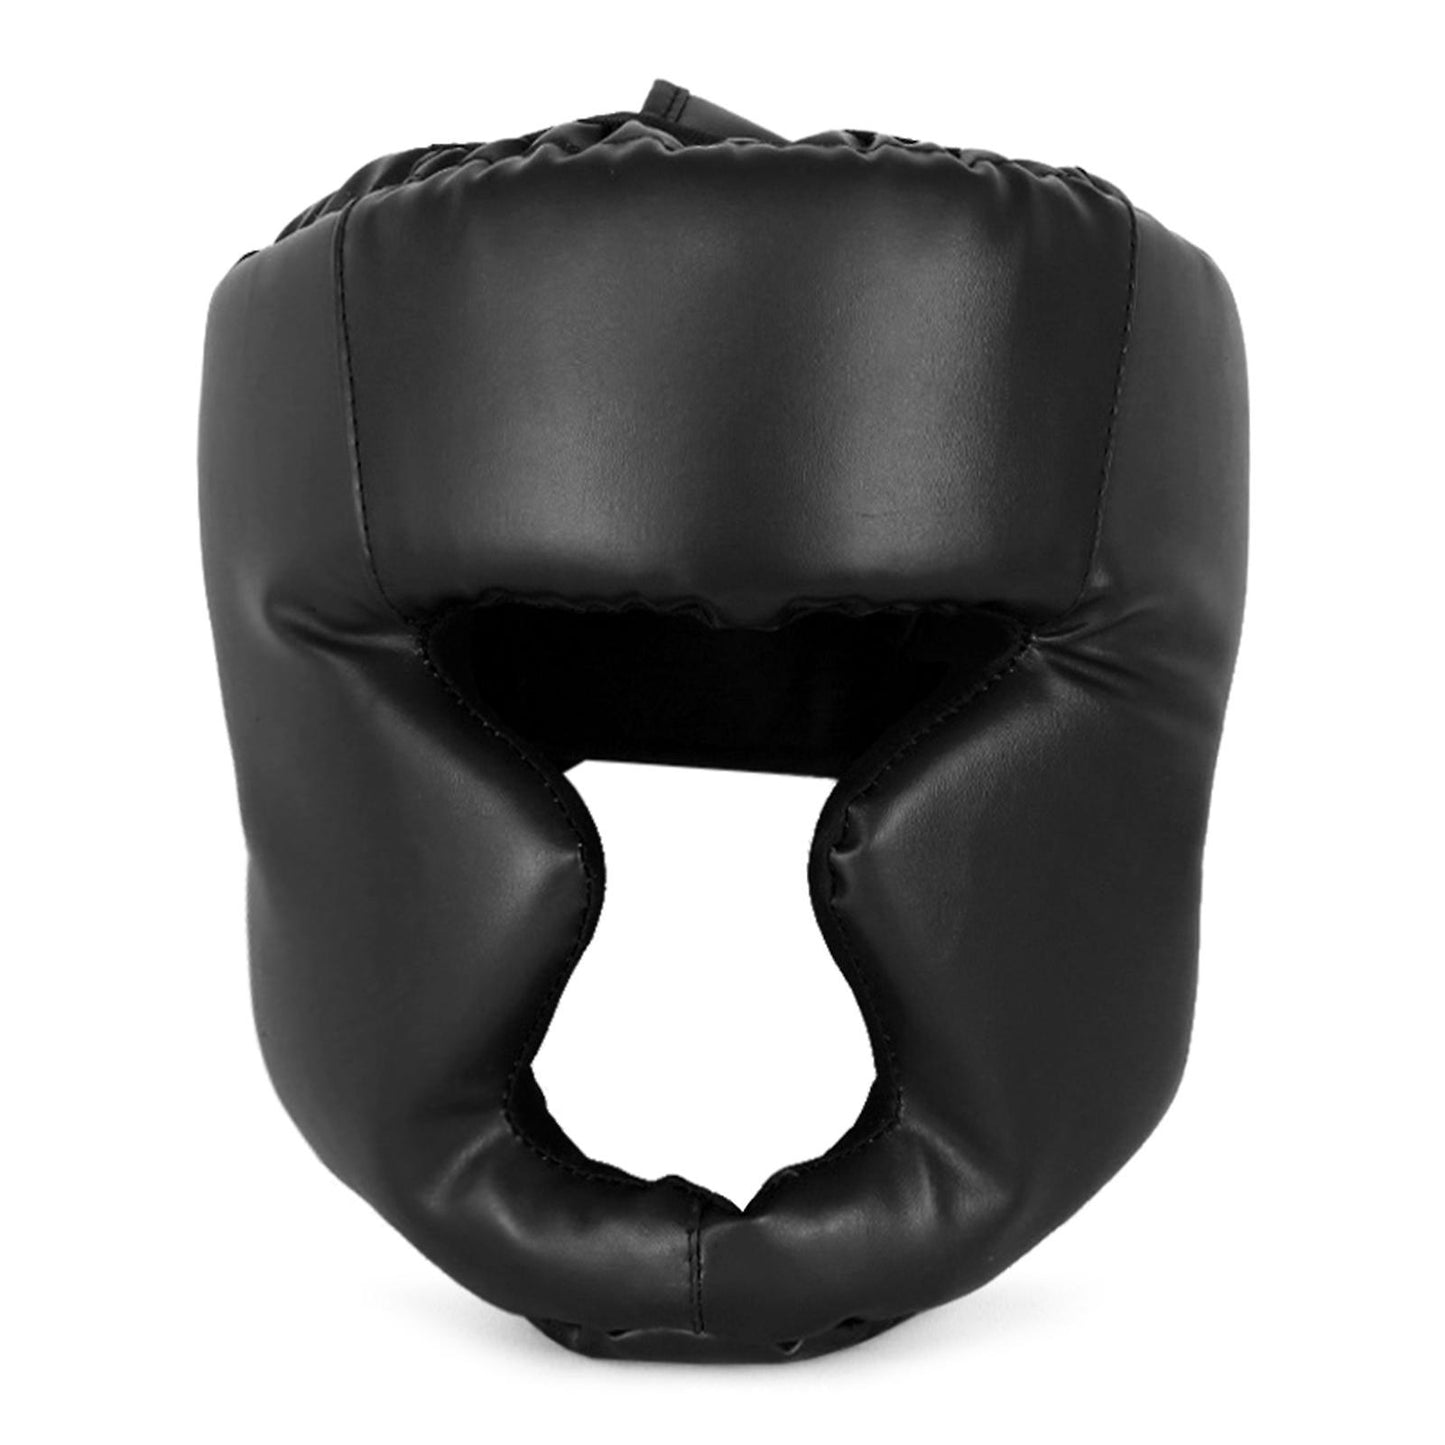 Boxing Head Gear